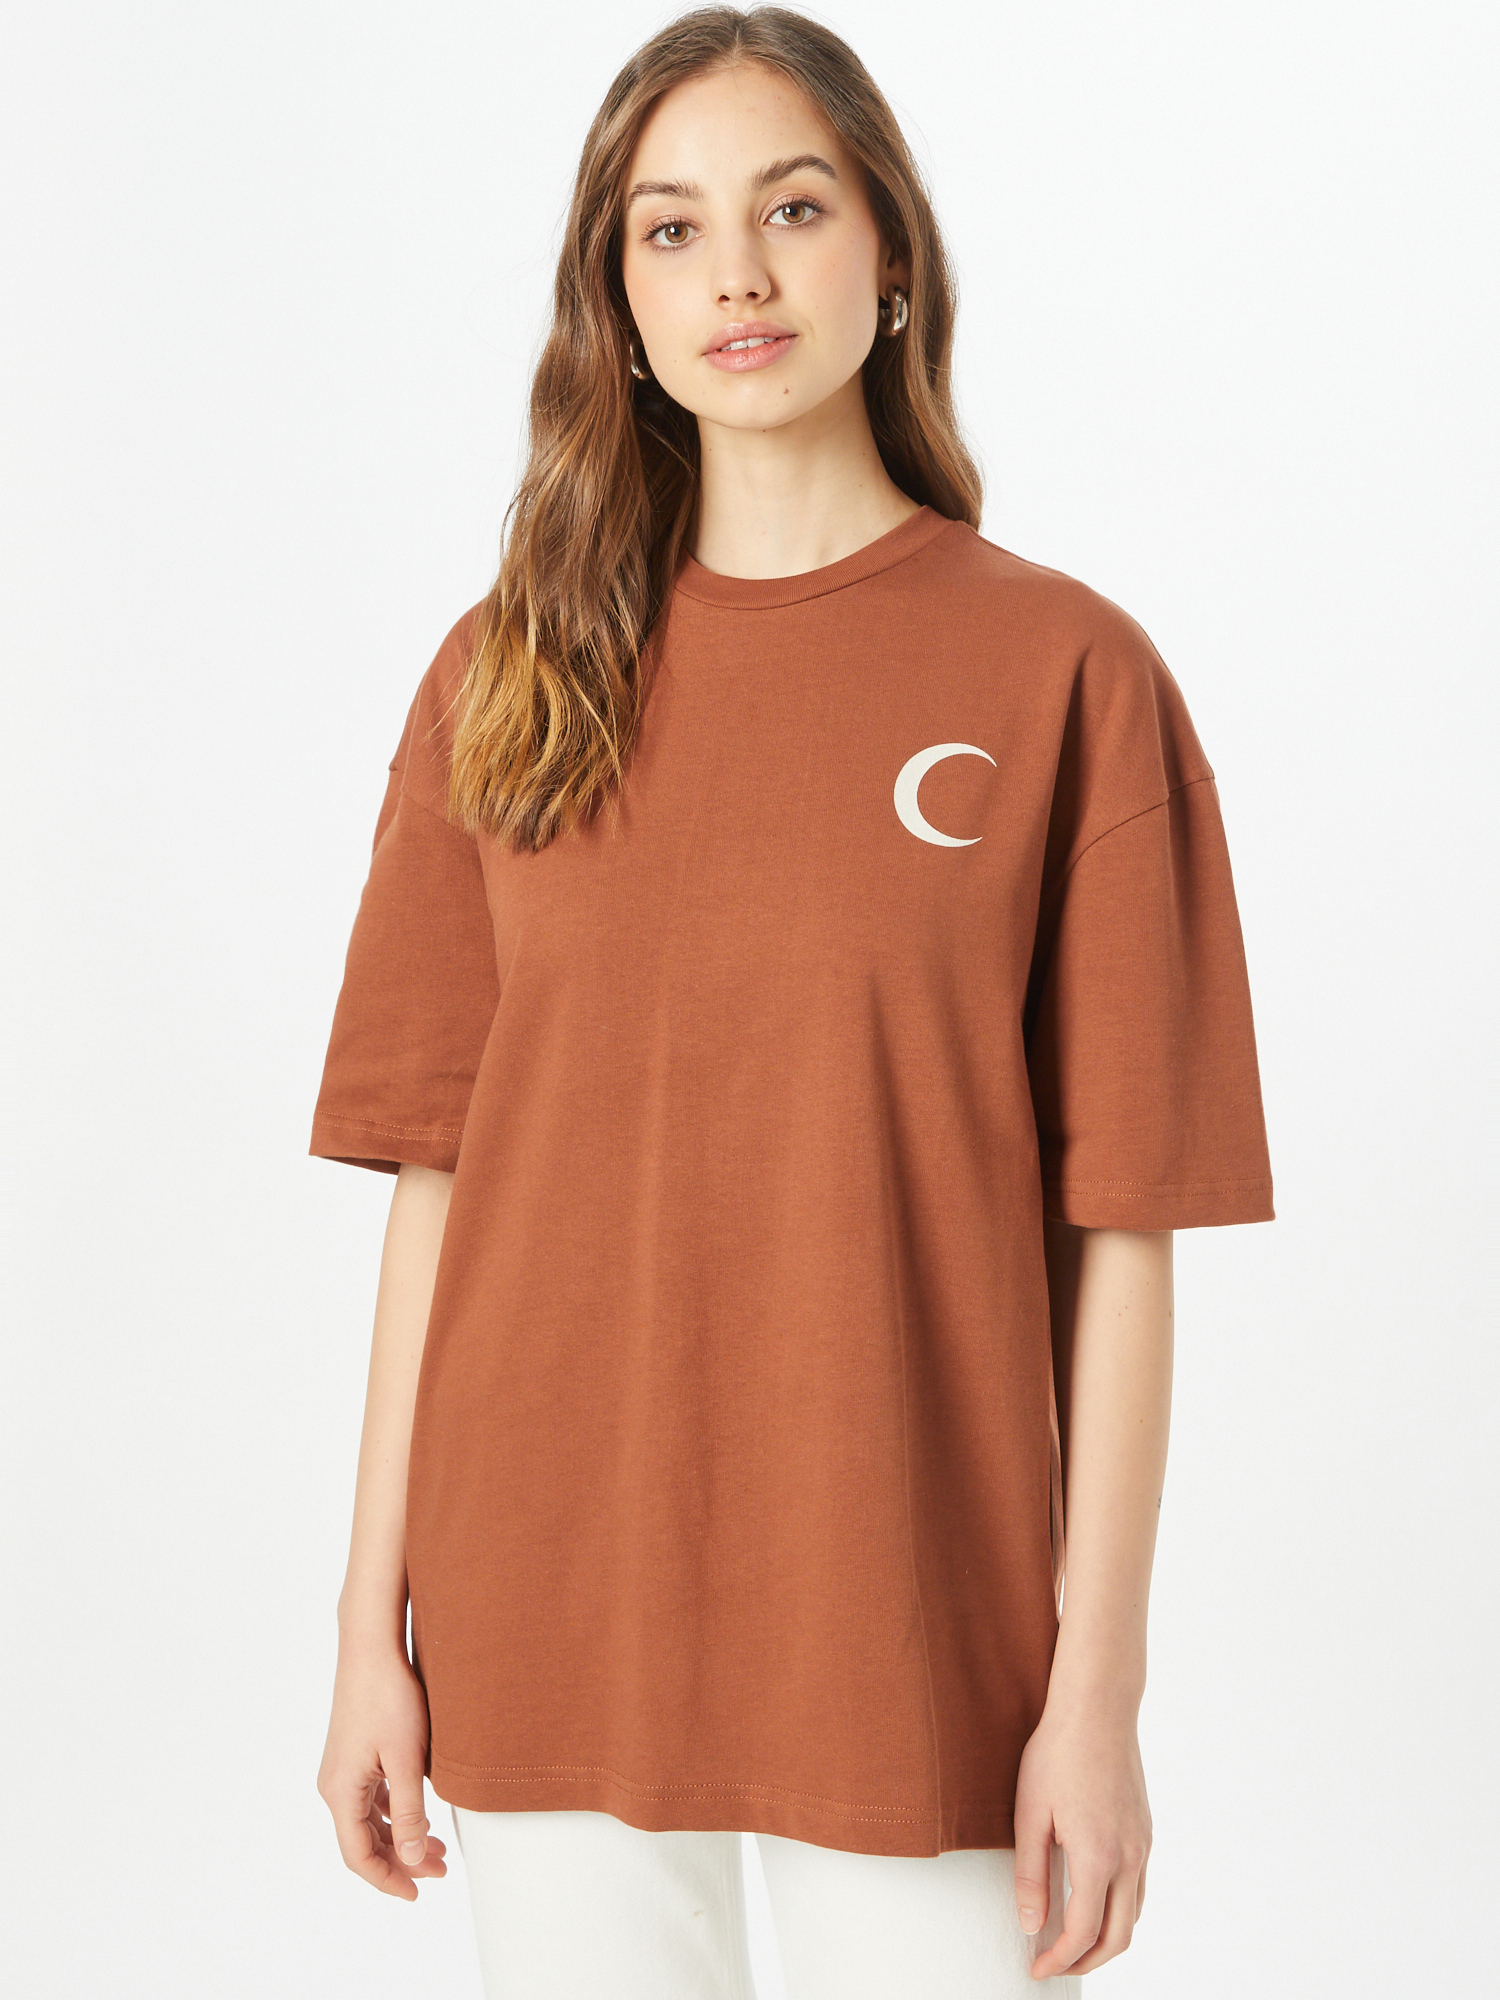 Kobiety Koszulki & topy  Limited Koszulka Anian w kolorze Brązowym 